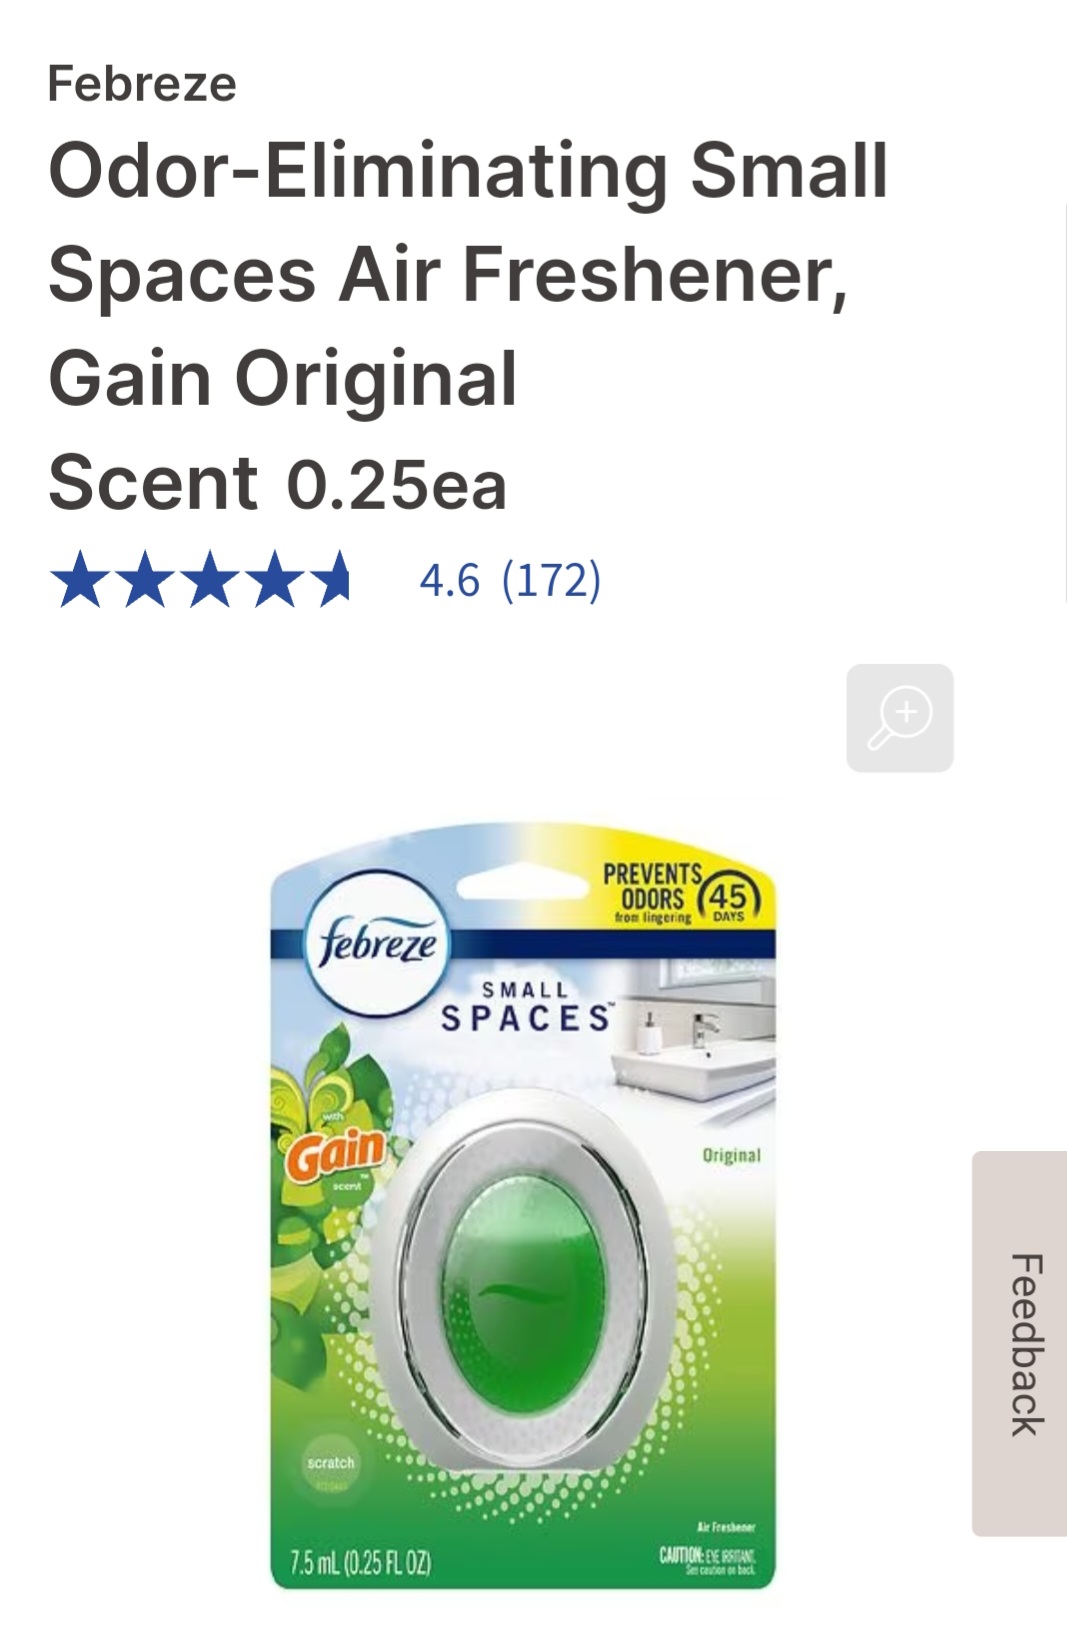 白菜价：Walgreens现有Febreze Odor-Eliminating Small Spaces Air Freshener仅